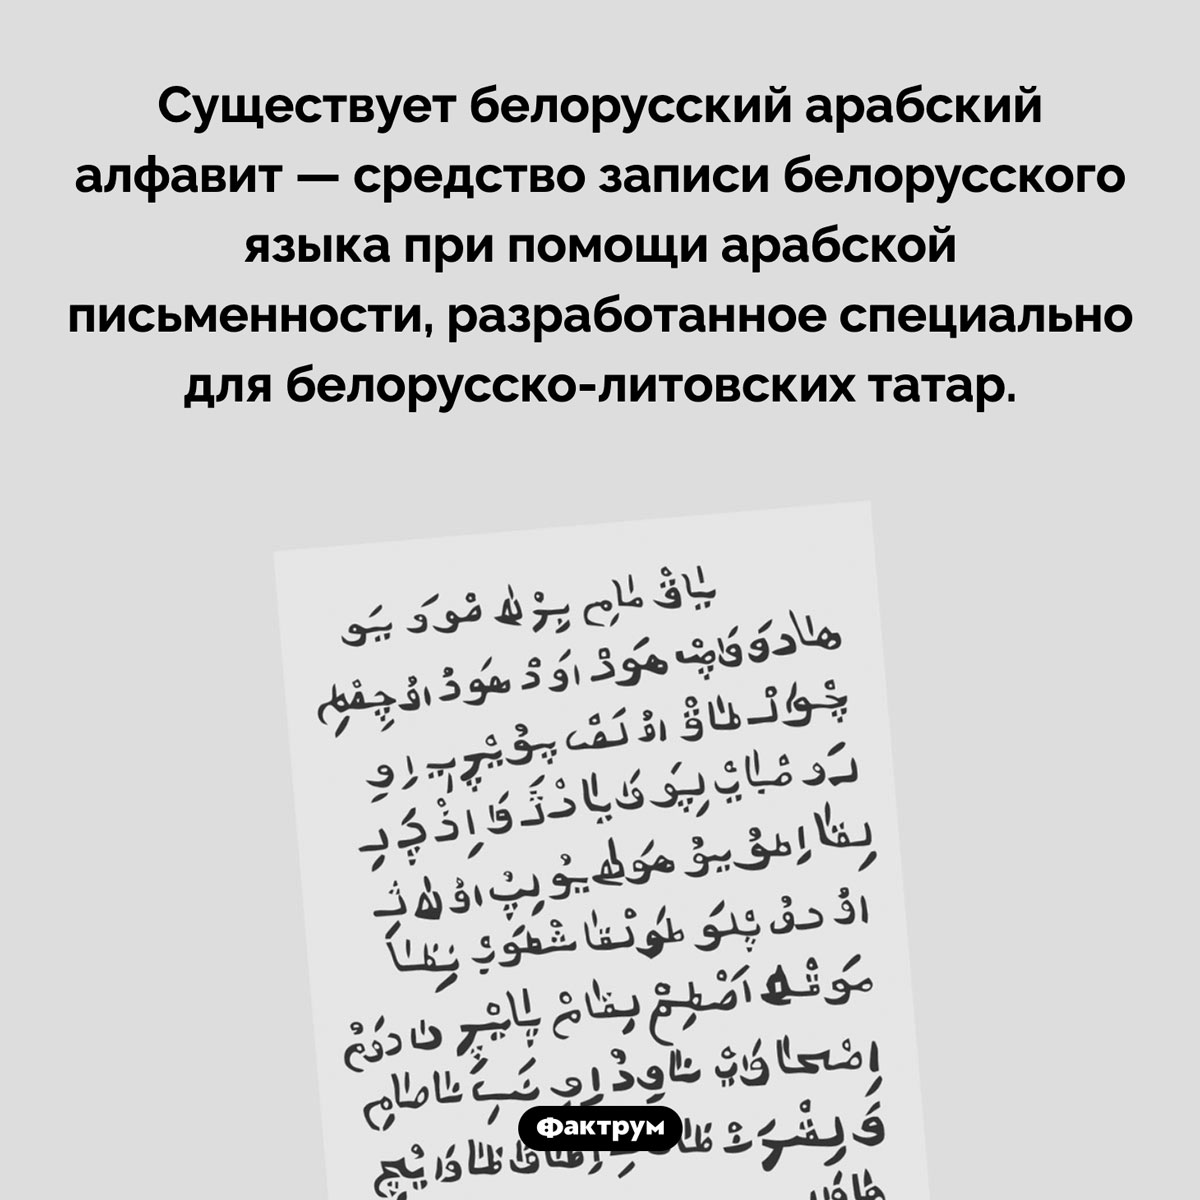 Белорусский арабский алфавит. Существует белорусский арабский алфавит — средство записи белорусского языка при помощи арабской письменности, разработанное специально для белорусско-литовских татар.